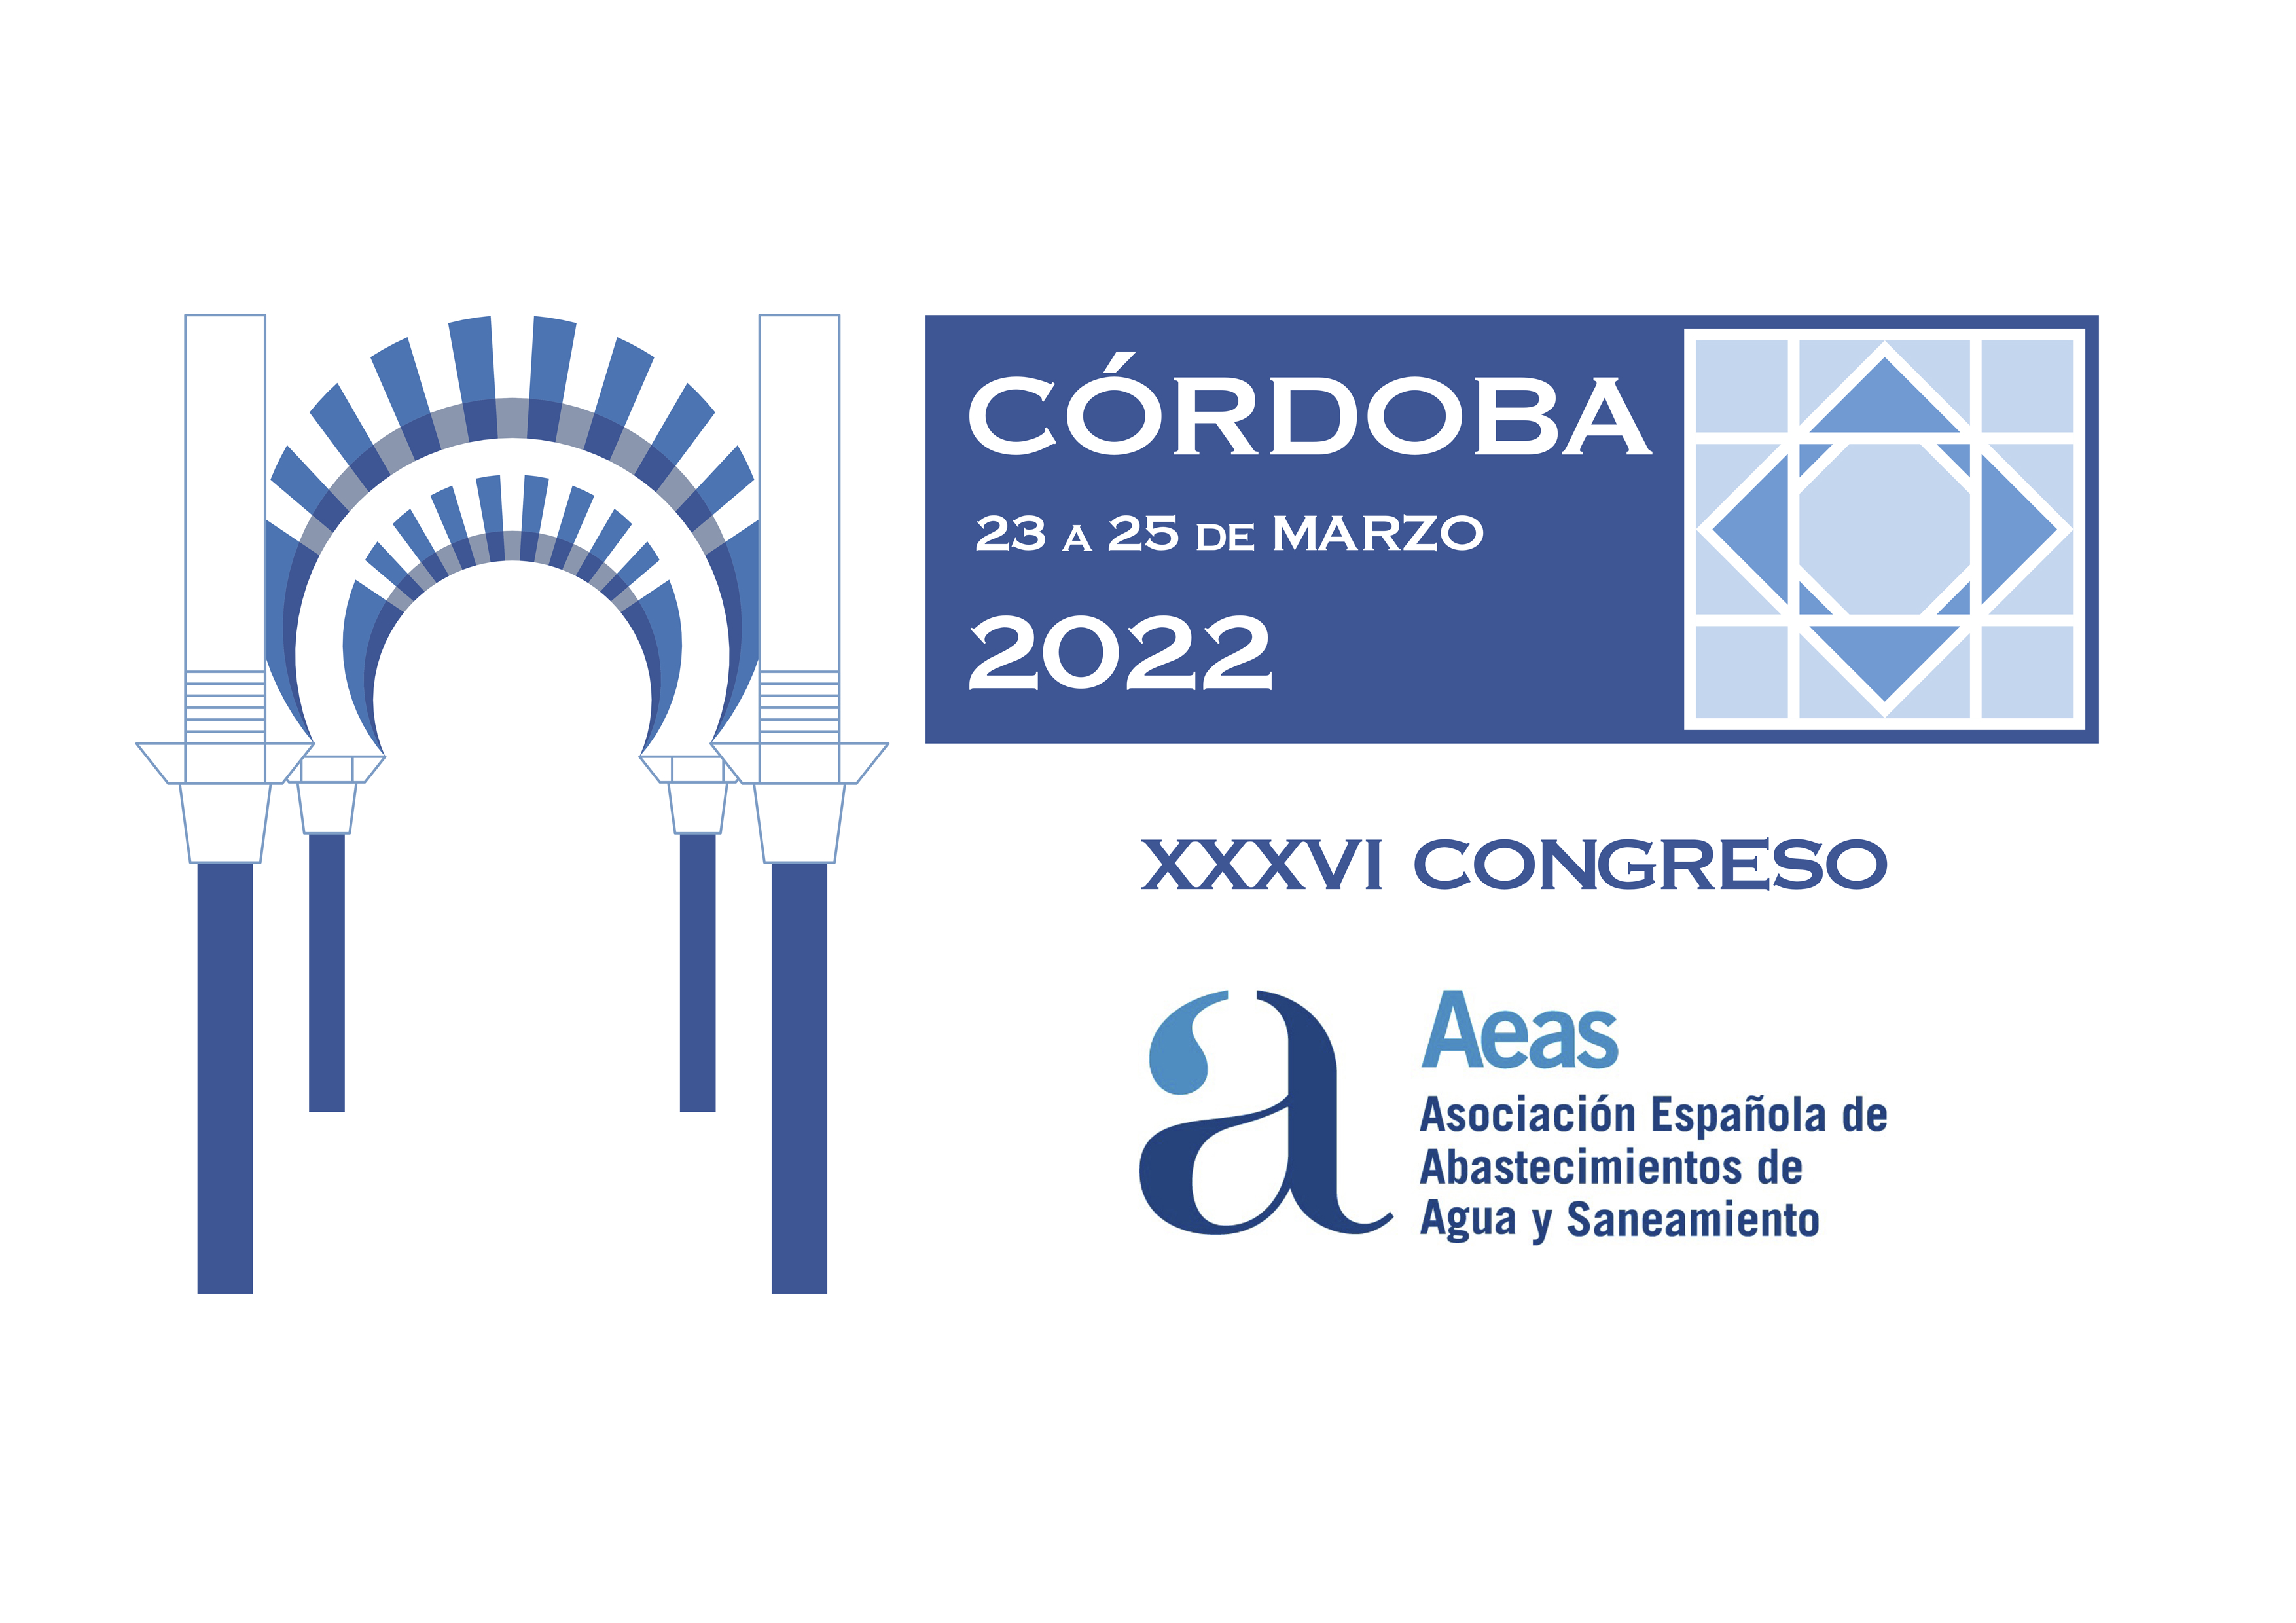 La XXXVI edición del Congreso de AEAS se celebrará los días 23, 24 y 25 de marzo de 2022 en Córdoba